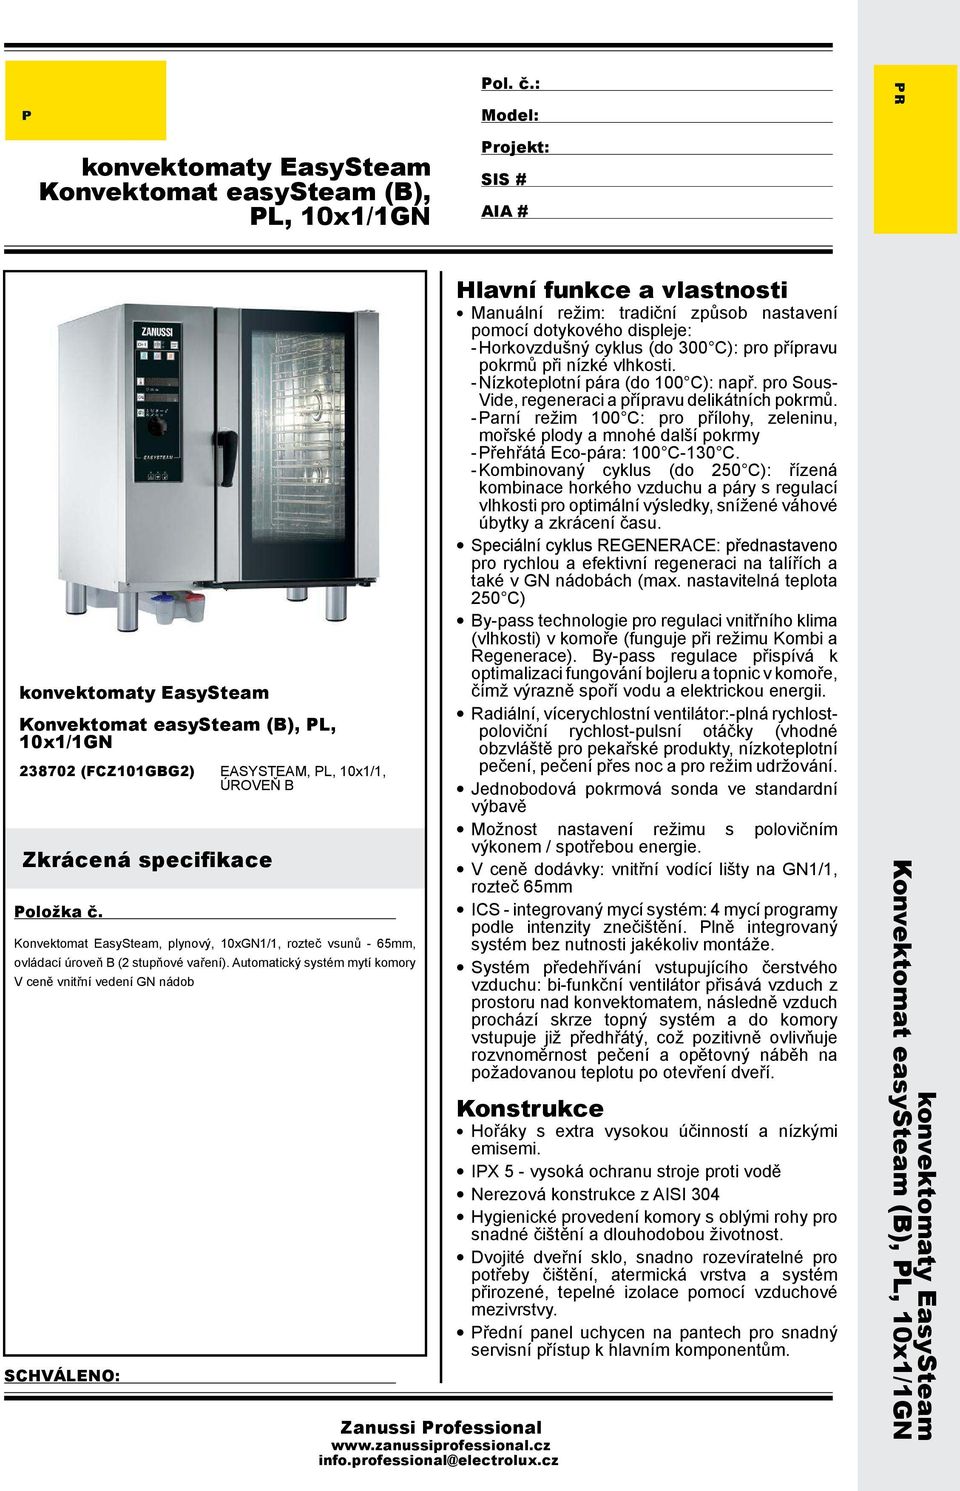 zanussiprofessional.cz info.professional@electrolux.